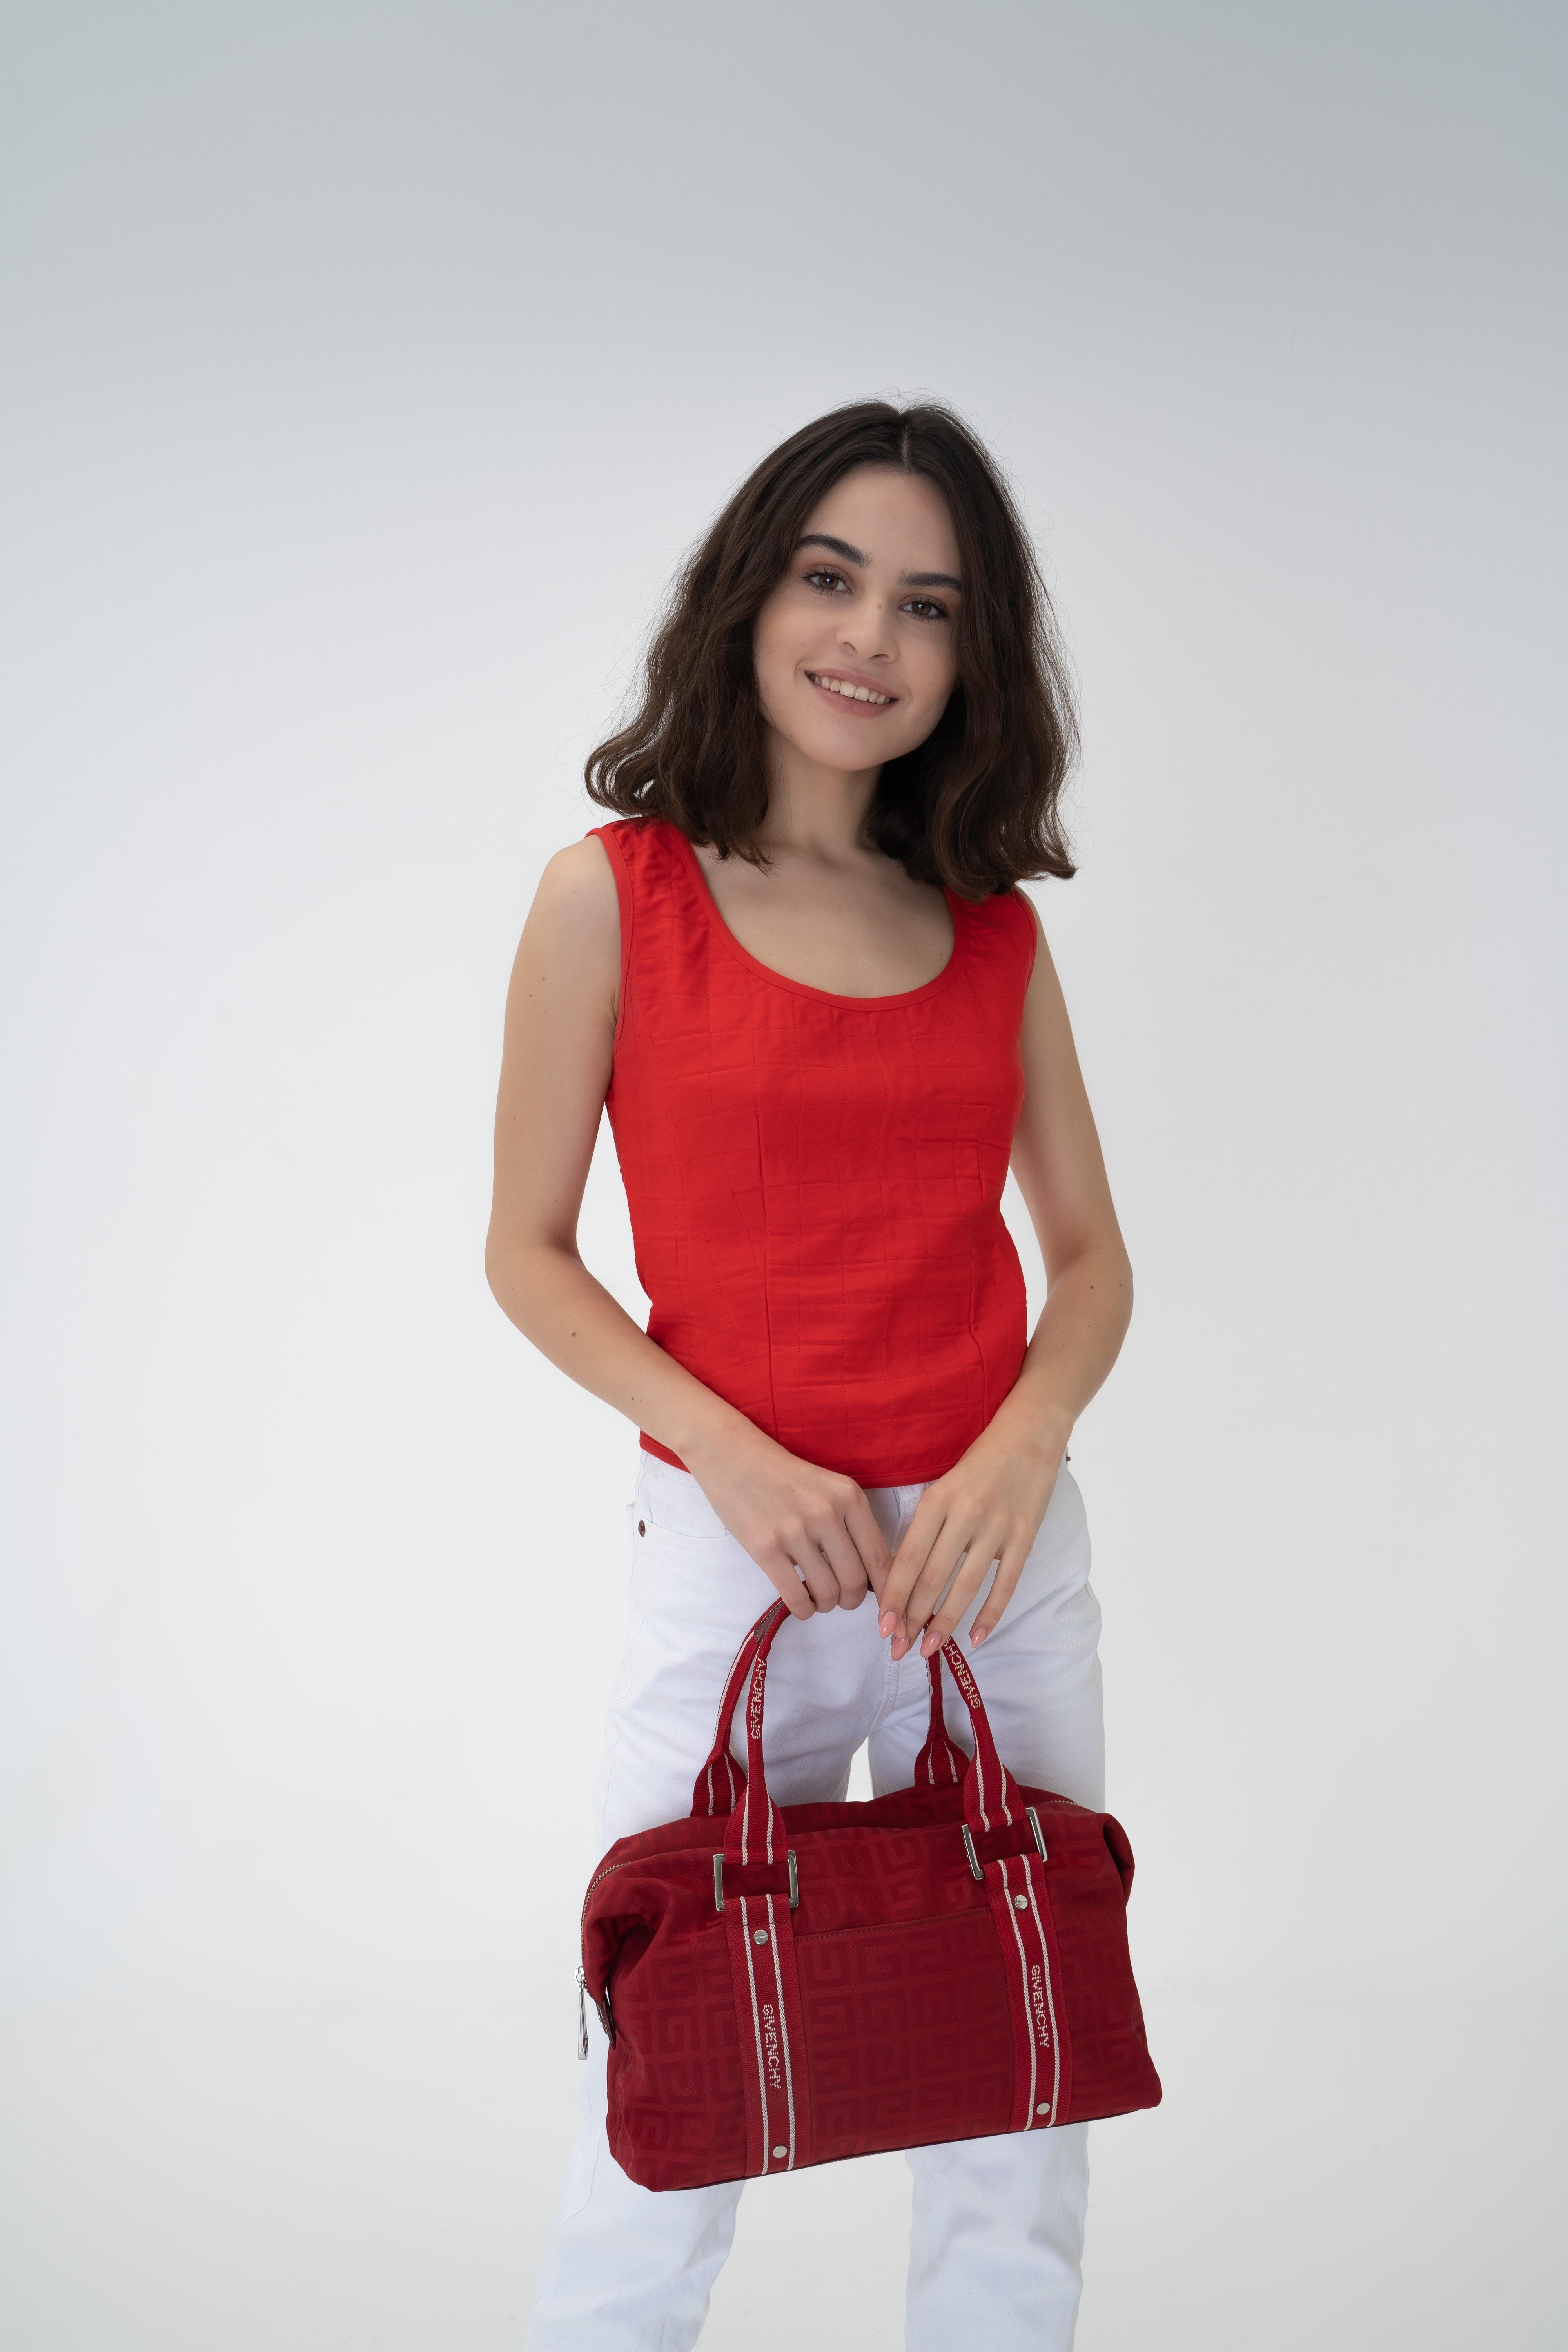 RED Monogrammierte Canvas-Logo-Handtasche von Givenchy
Echtheitscode: SI 1014
Details: minimalistisches Logo - klassischer Givenchy-Druck, alle Beschläge/Futter sind gebrandet.
Sie hat ein großes Fach, eine seitliche Reißverschlusstasche, einen